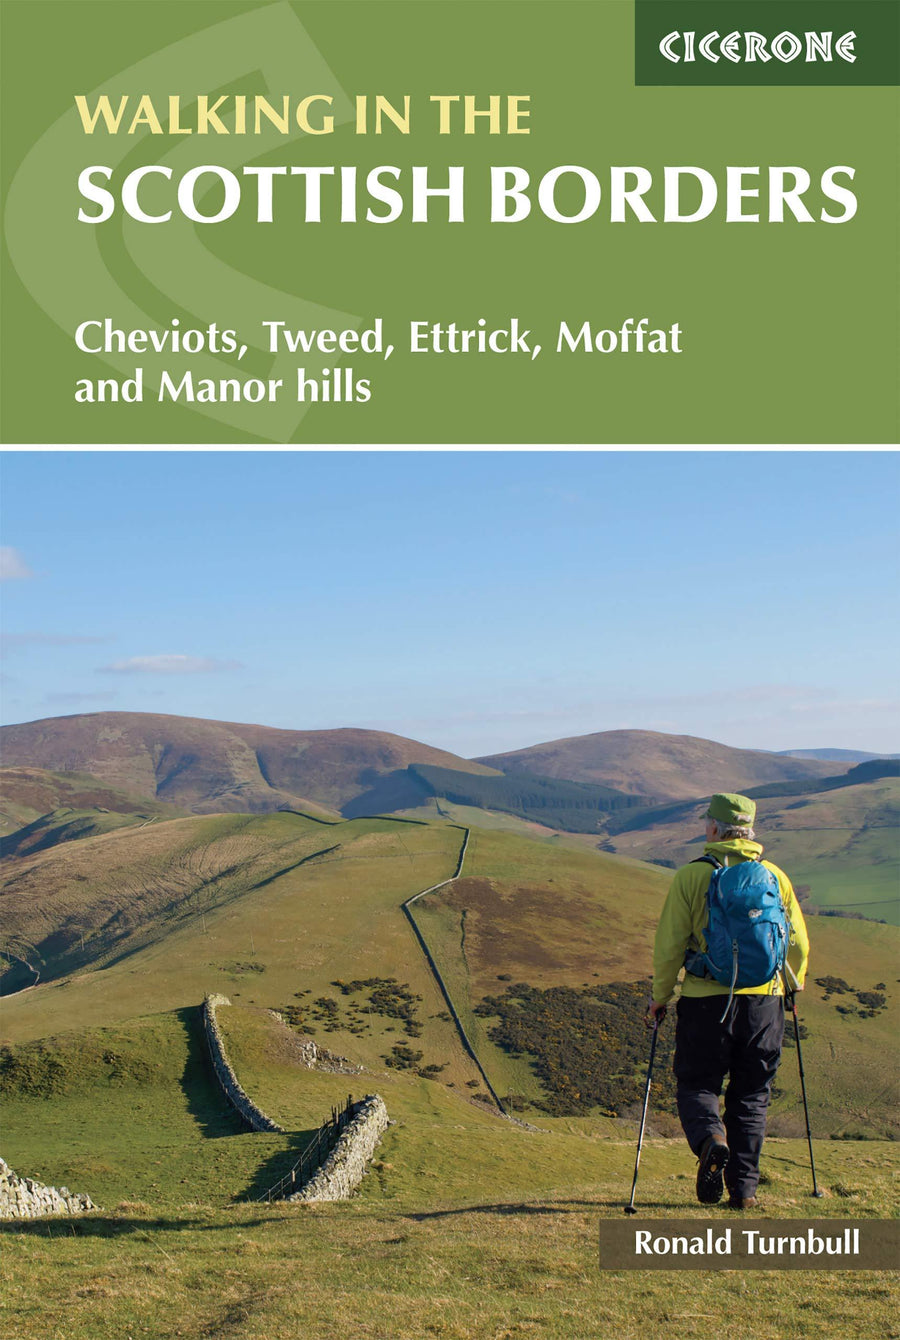 Guide de Randonnée (en anglais) - Walking in the Scottish Borders: Cheviots, Tweed, Ettrick, Moffat and Manor hills (Ecosse) | Cicerone guide de randonnée Cicerone 